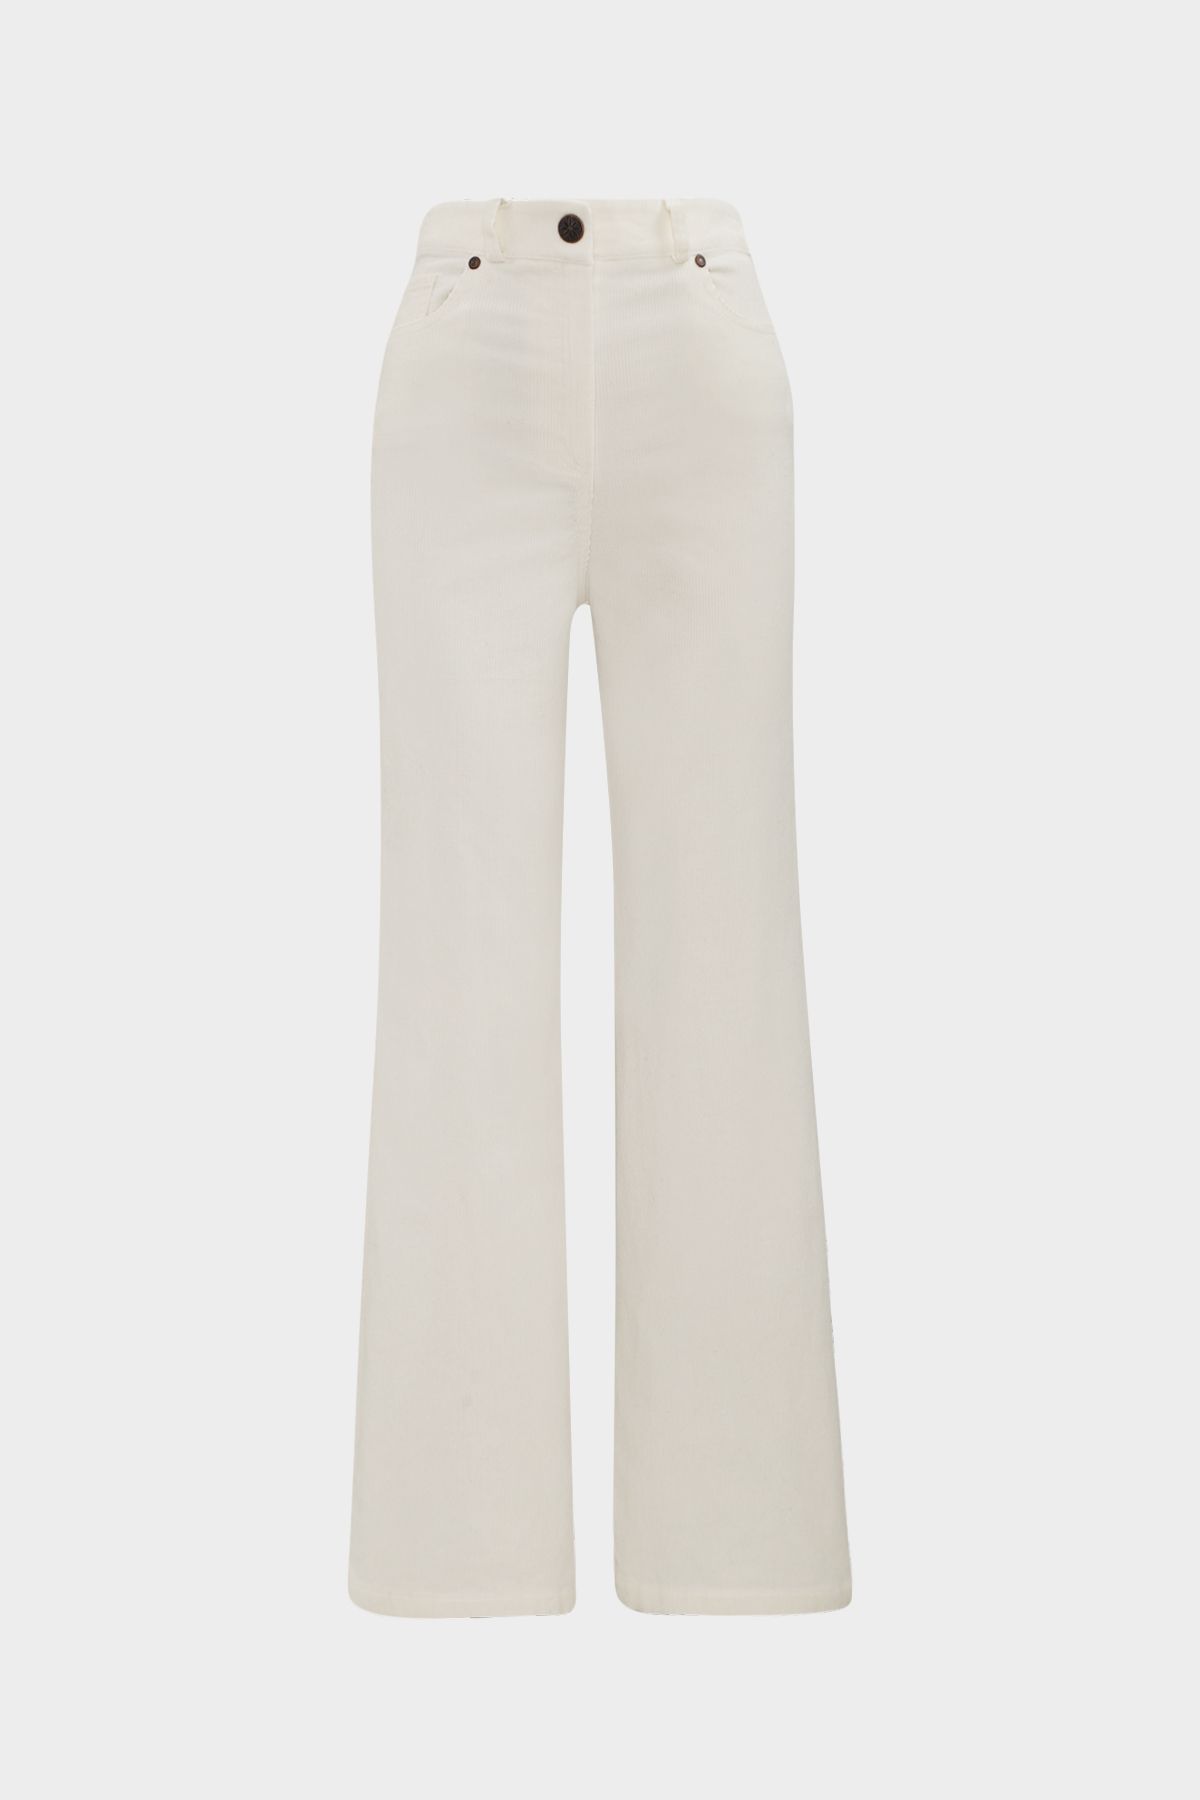 Açelya Okcu Premium Yüksek Bel Likralı Flare Kadife Pantolon